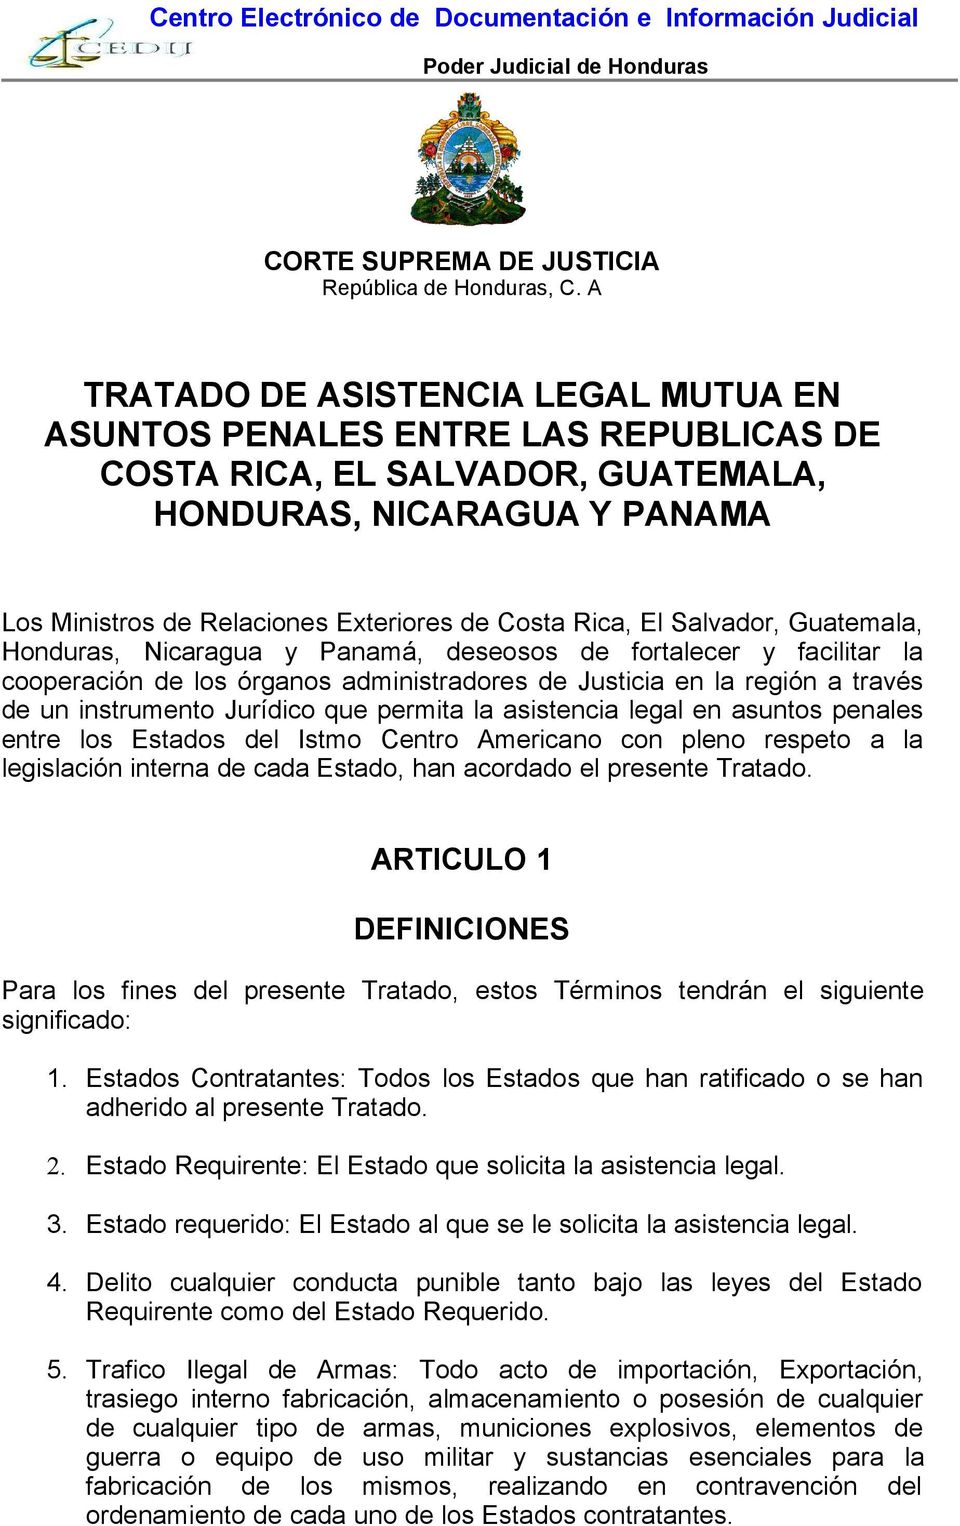 El Salvador, Guatemala, Honduras, Nicaragua y Panamá, deseosos de fortalecer y facilitar la cooperación de los órganos administradores de Justicia en la región a través de un instrumento Jurídico que